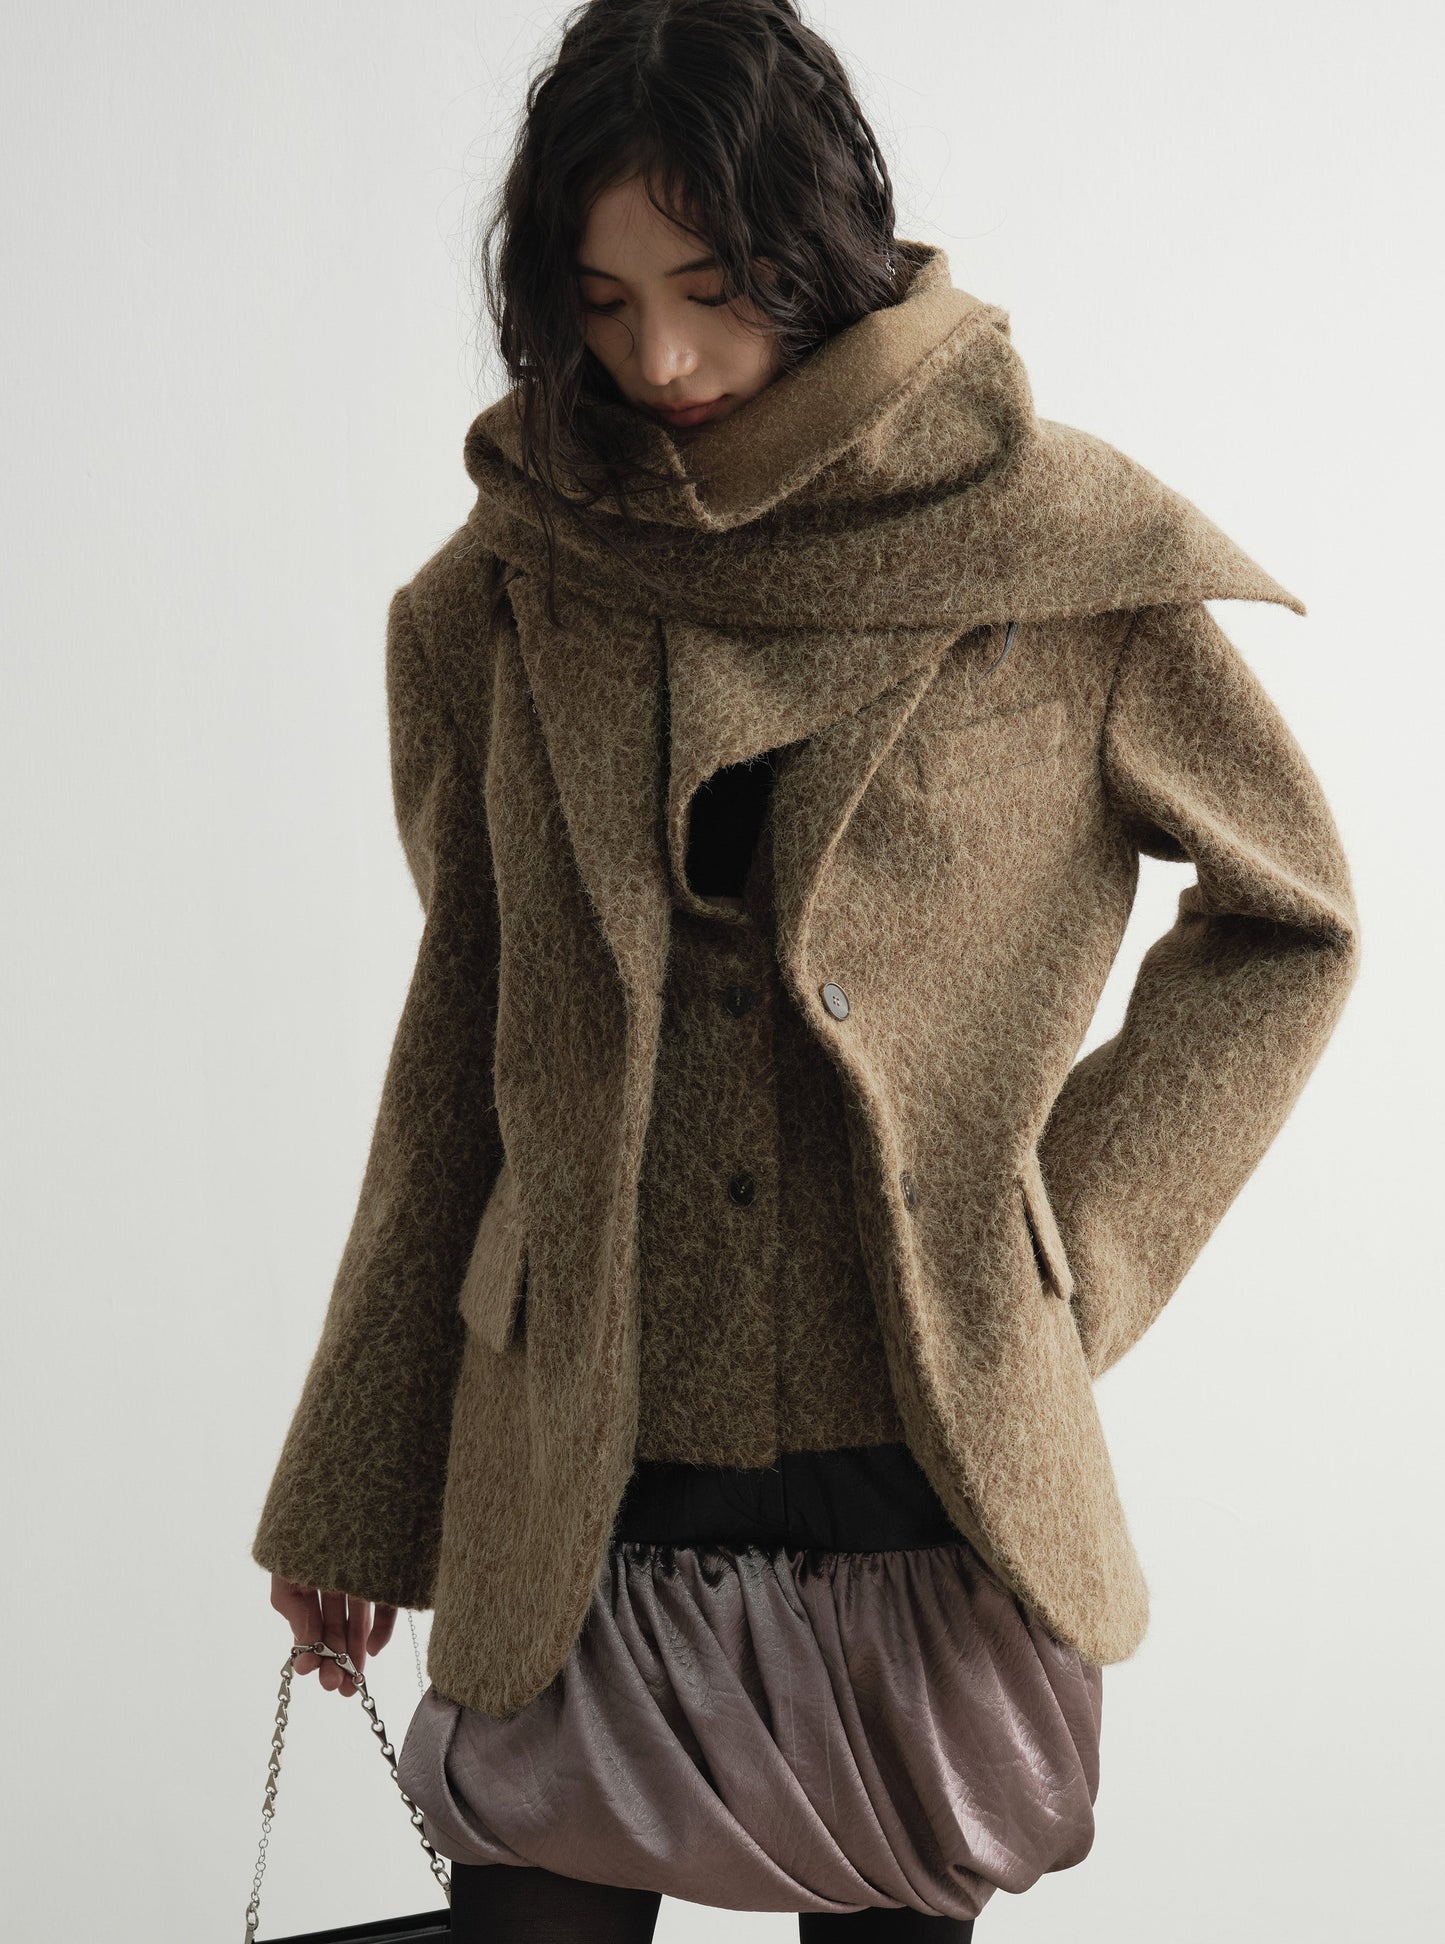 Two-piece scarf ginger texture woolen blazer